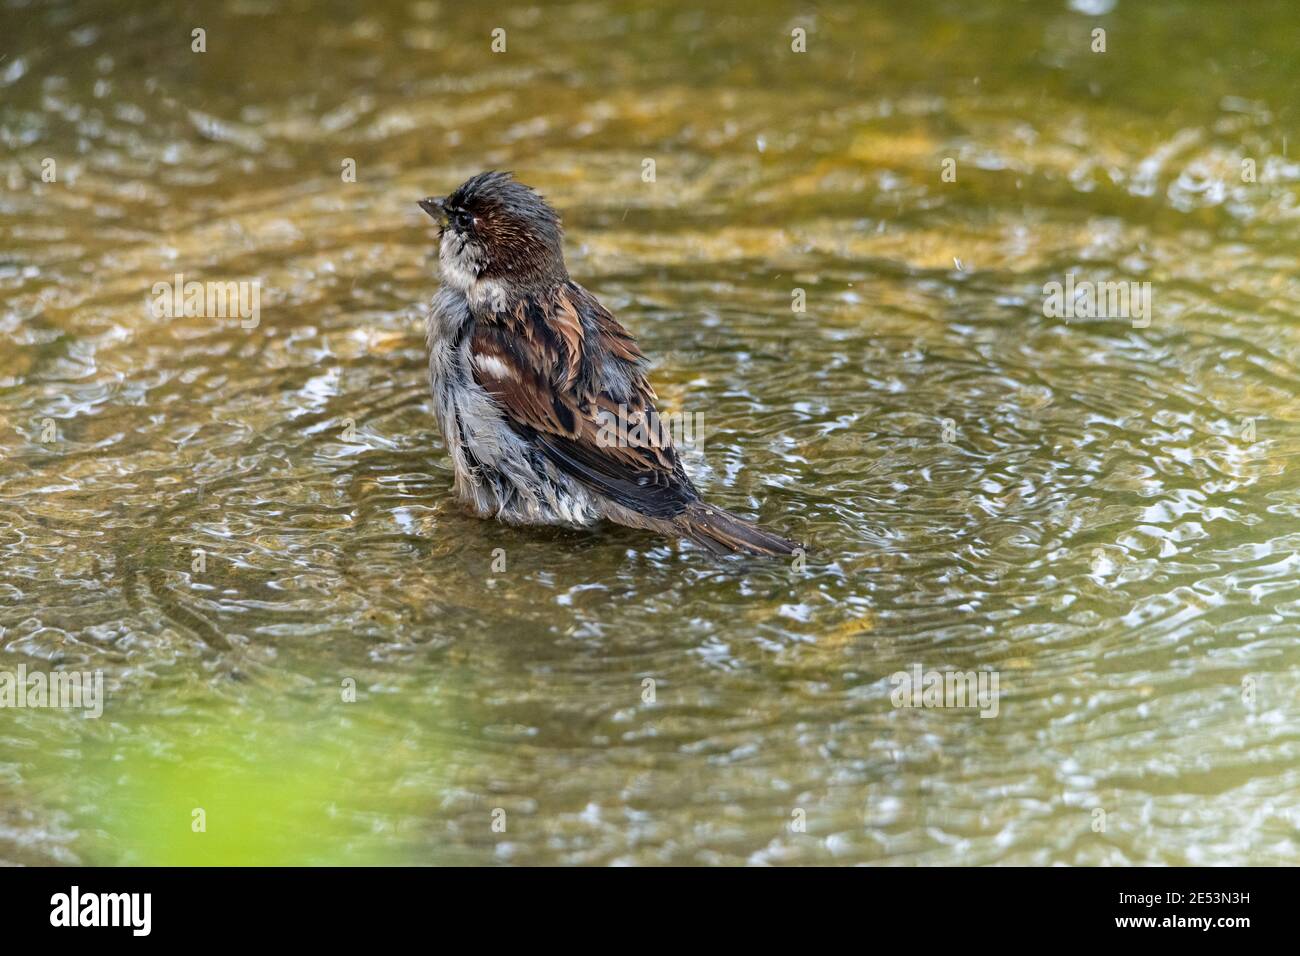 Sparrow facendo un bagno in una pozza, spruzzi d'acqua intorno orgogliosamente mentre pulisce le sue piume Foto Stock